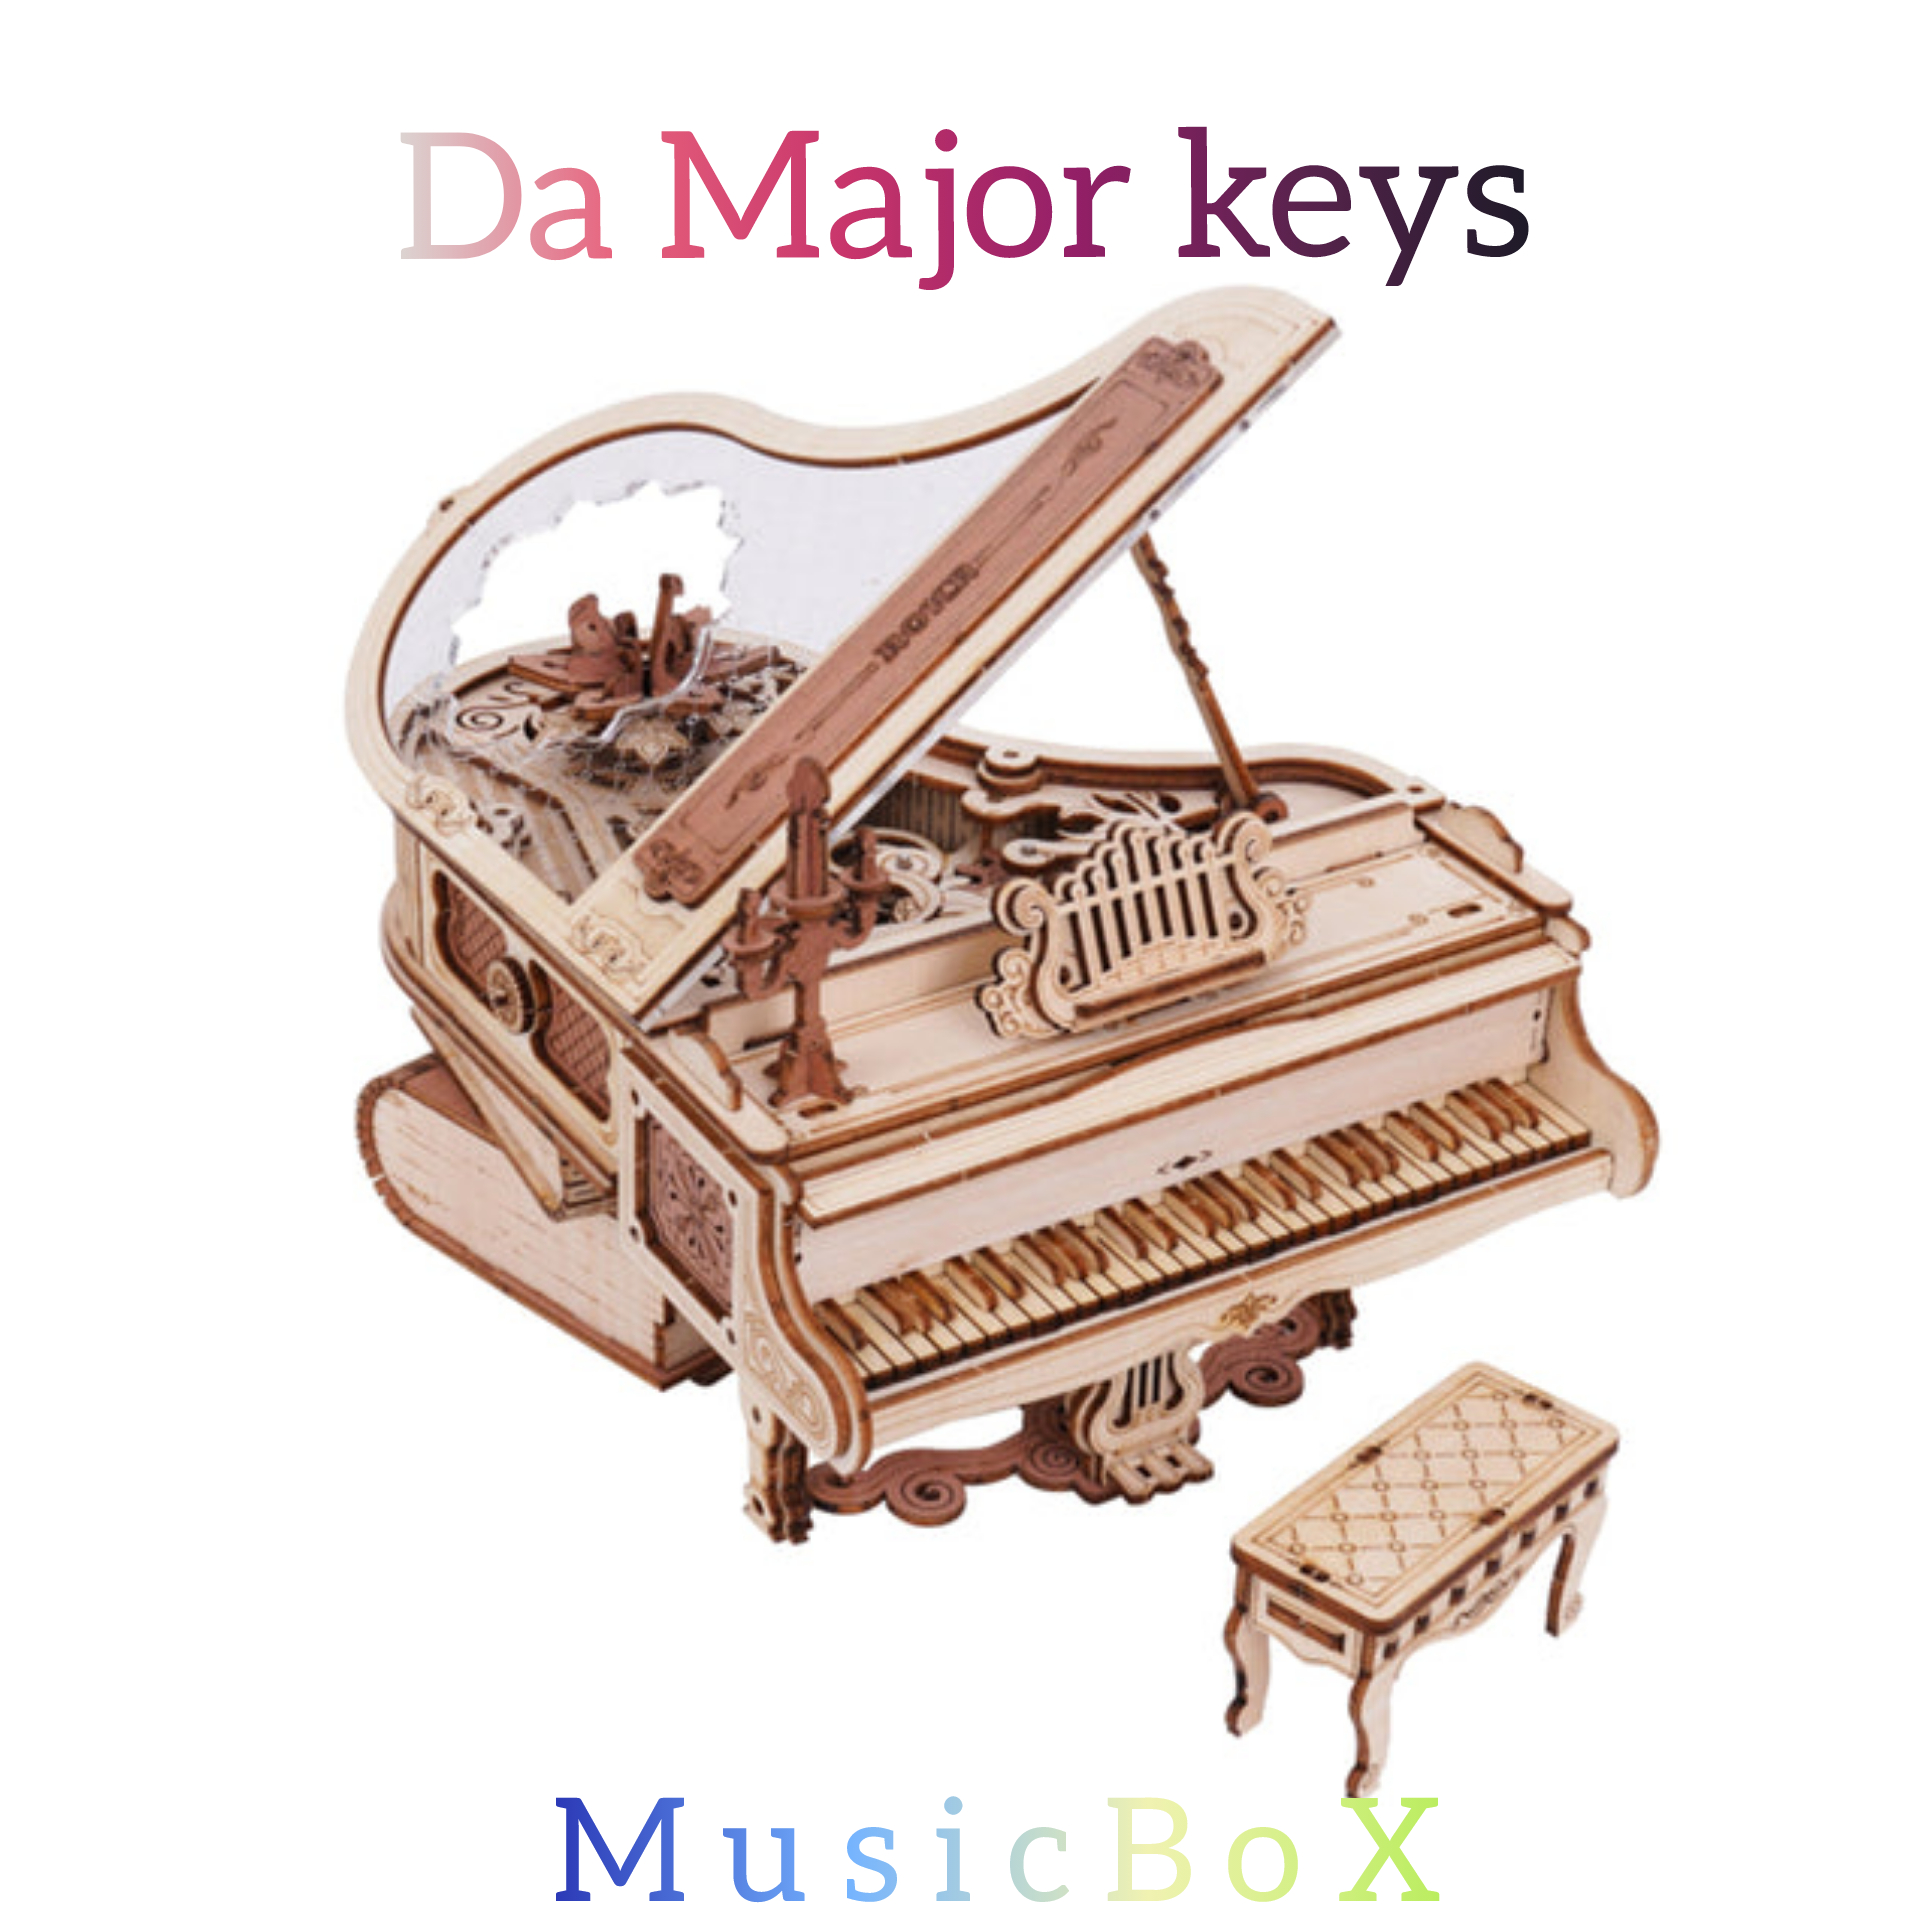 Da_Major_keys_Music_Box - Da Major keys